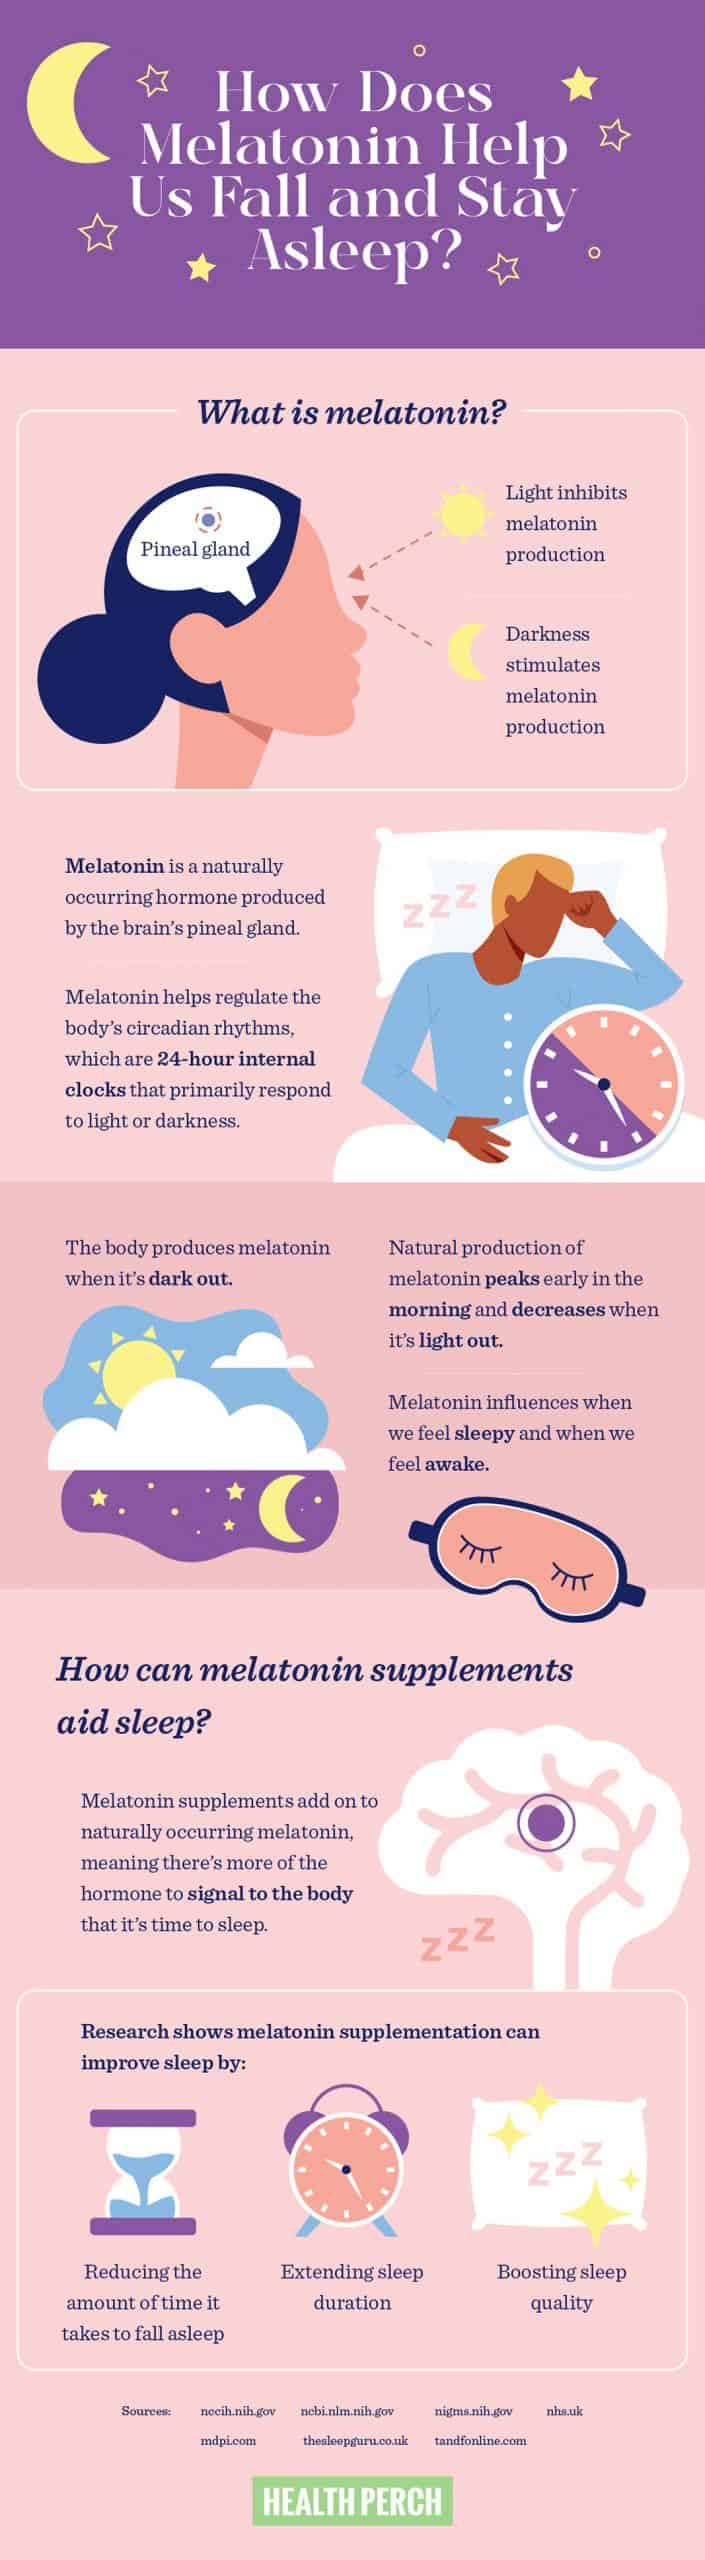 Melatonin for Better Sleep: Does it Work?